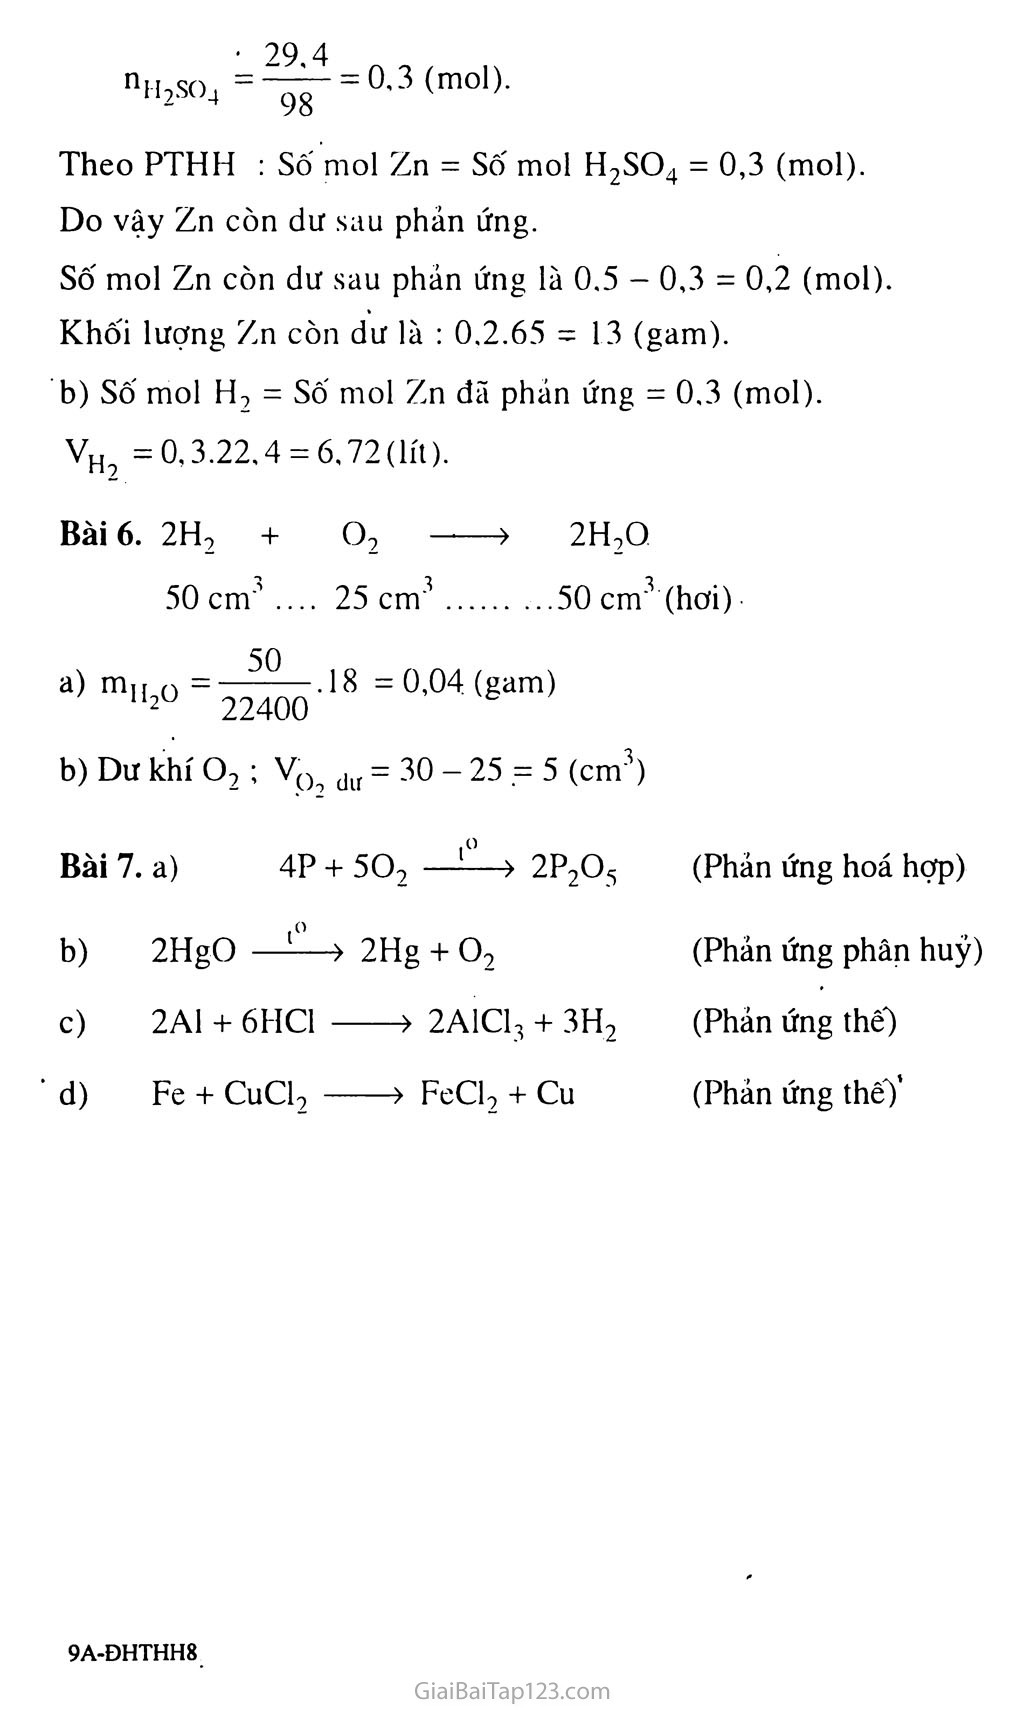 Bài 33: Điều chế khí hiđro - Phản ứng thế trang 4